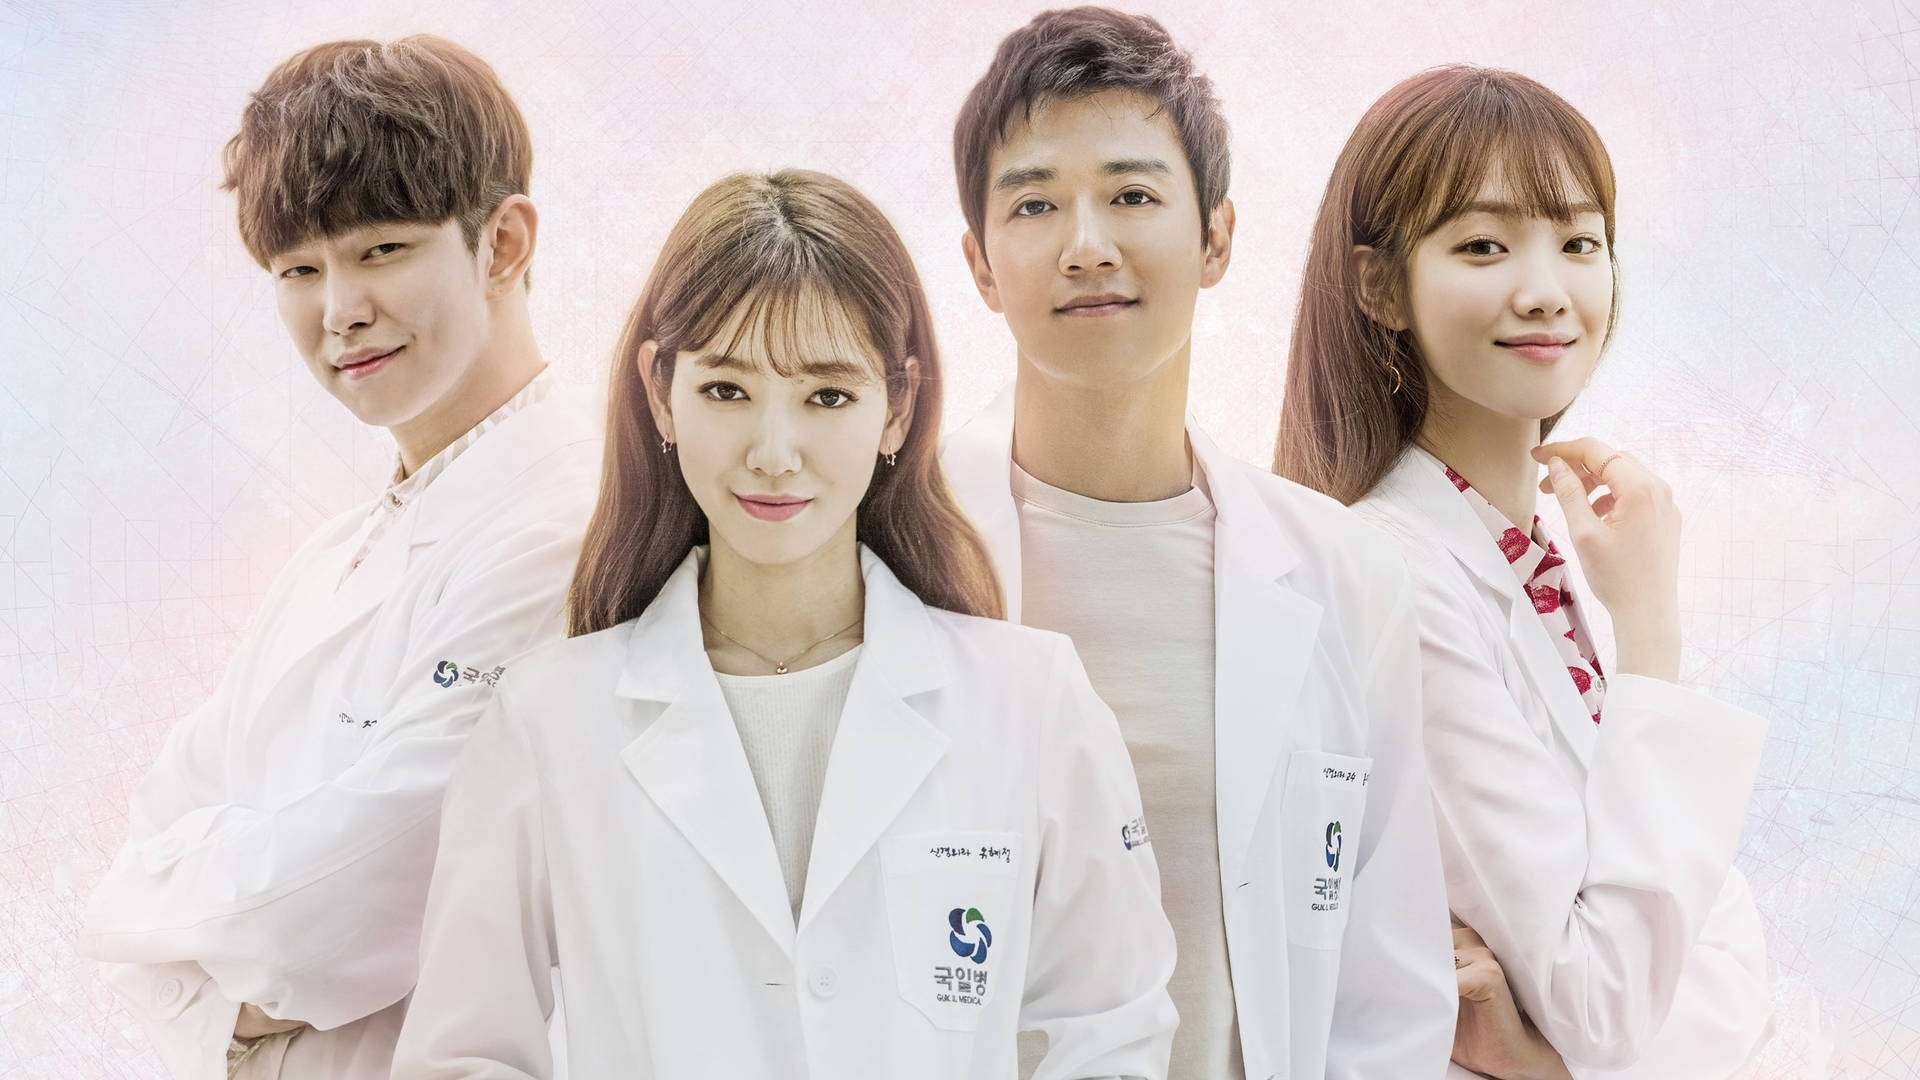 Korean Doctors Background